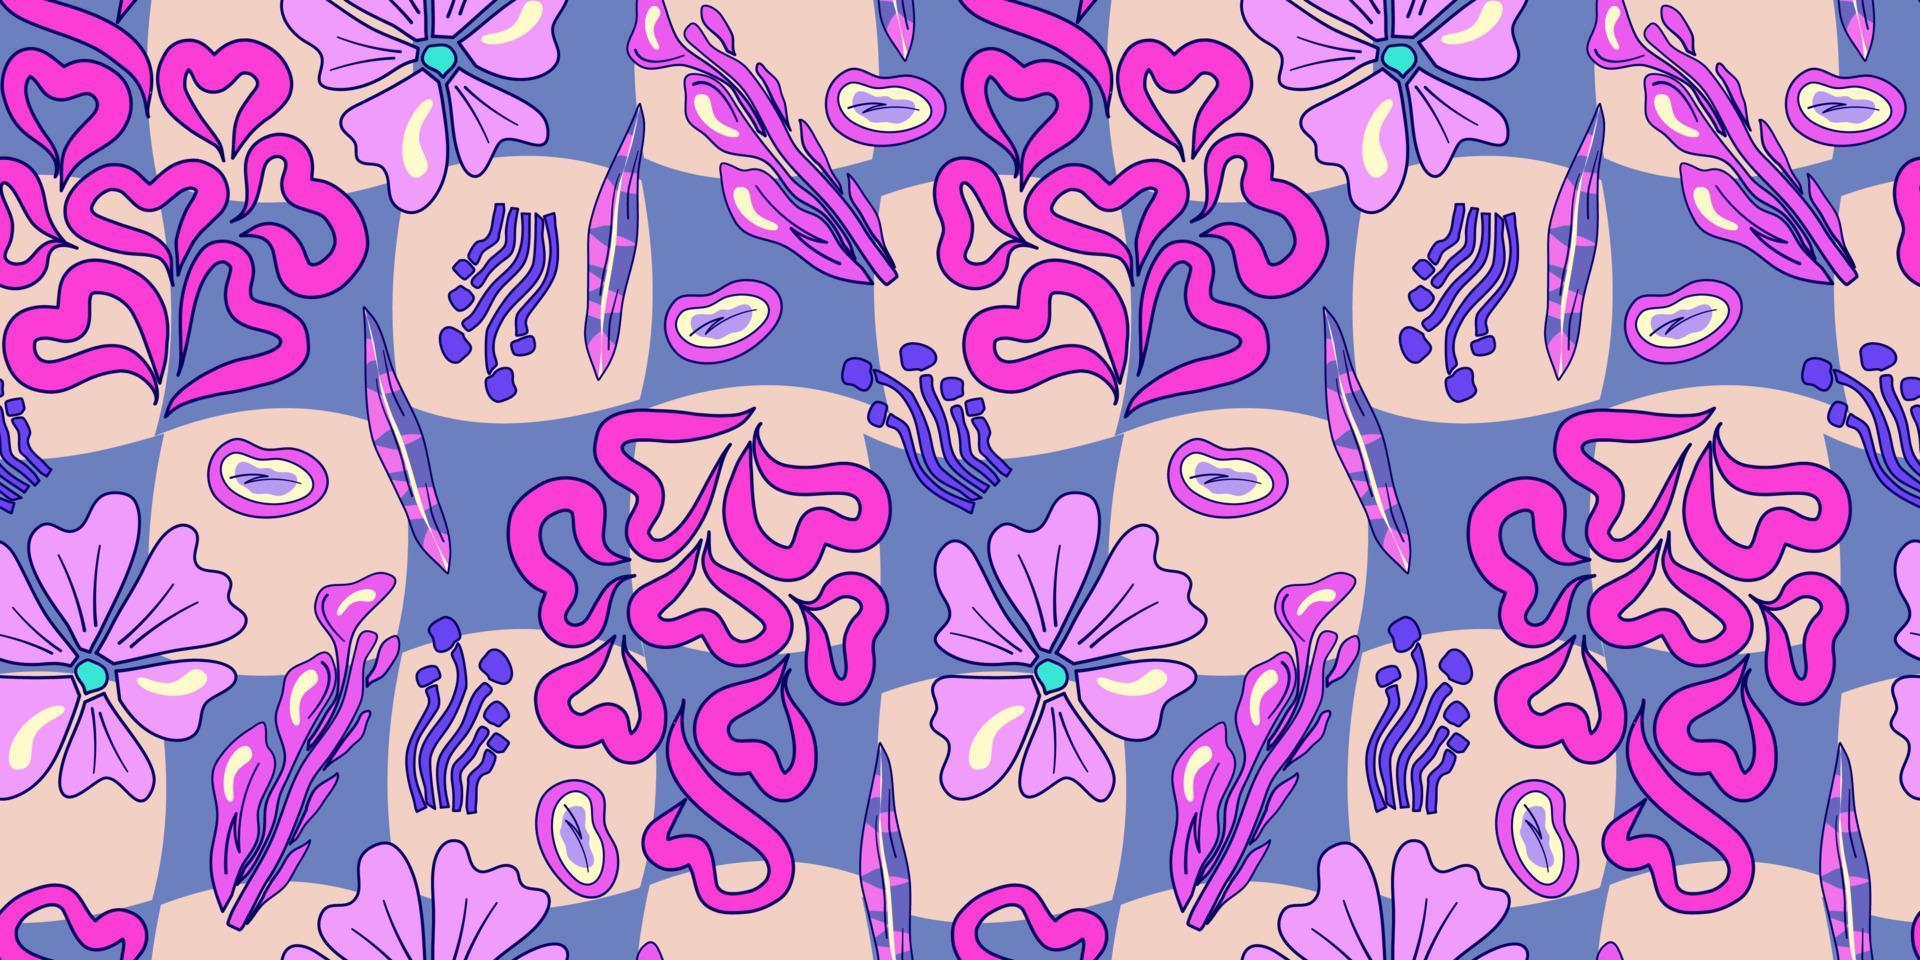 patrón psicodélico trippy de flores sin costuras. patrón transparente psicodélico púrpura. estampado mágico de margaritas florales. diseño trippy hippie floral ilustración plana. impresión retro y2k vector